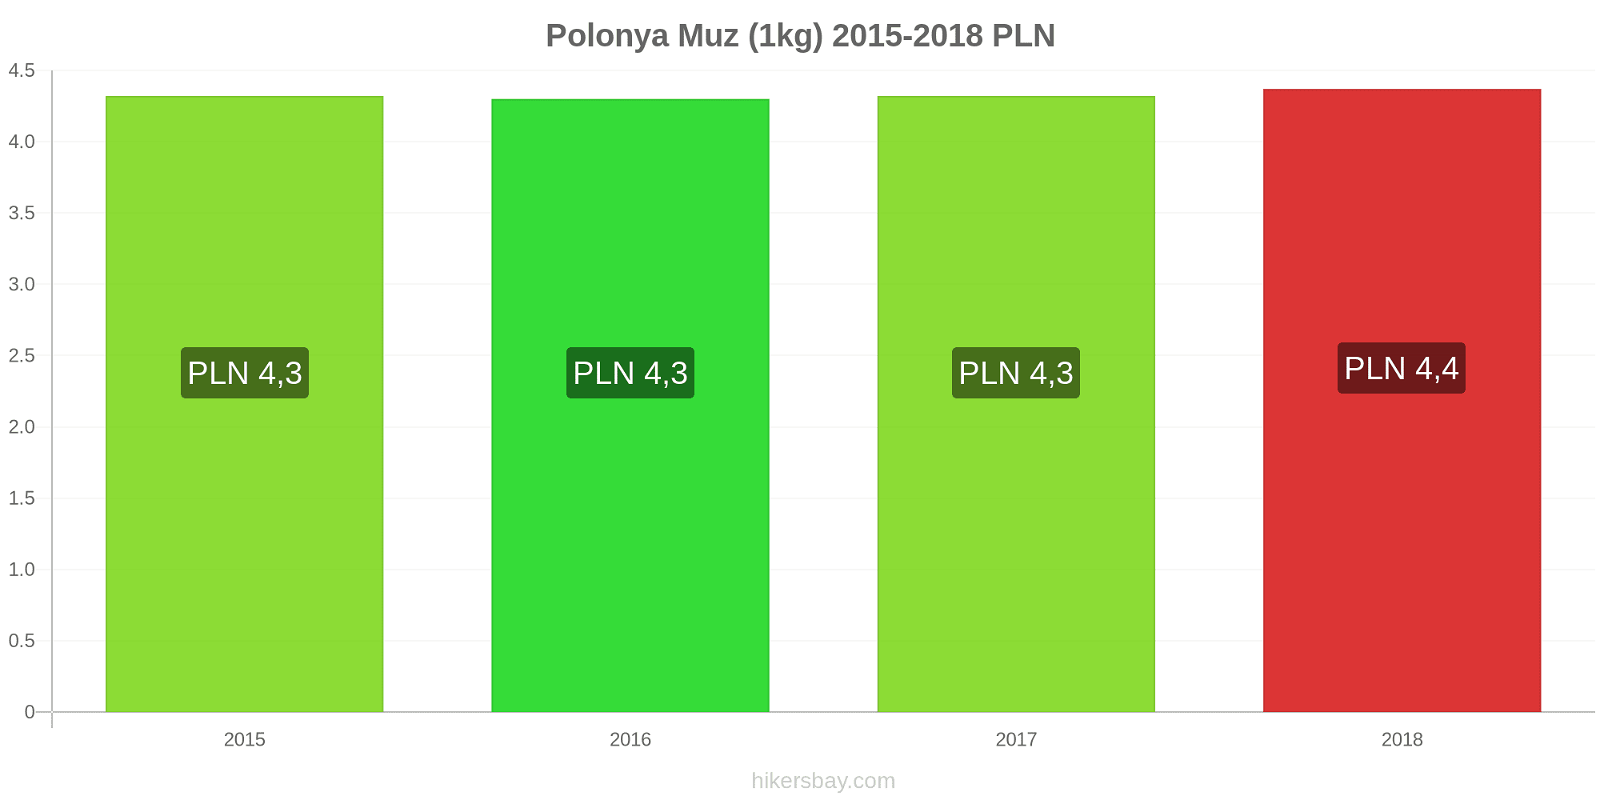 Polonya fiyat değişiklikleri Muzlar (1kg) hikersbay.com